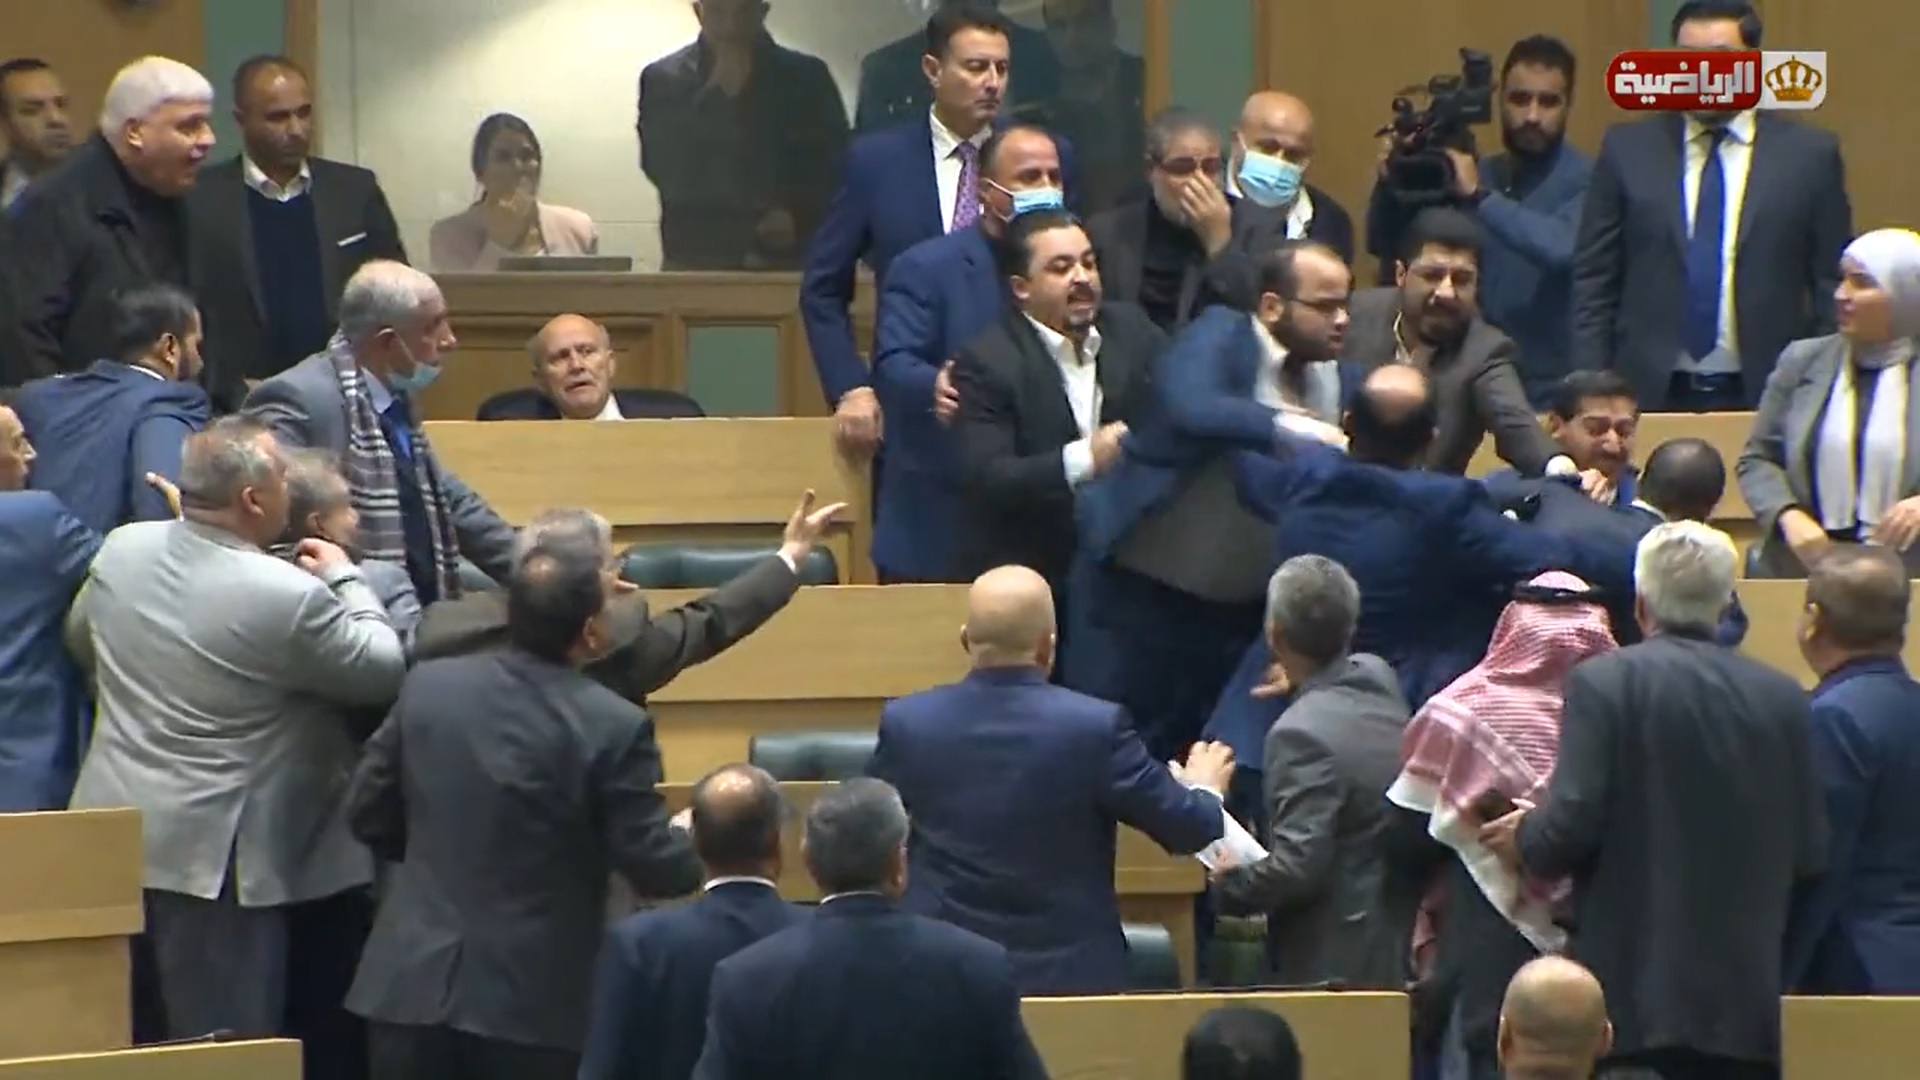 شاهد : مشاجرة بالأيدي داخل البرلمان الأردني بسبب "كلمة"